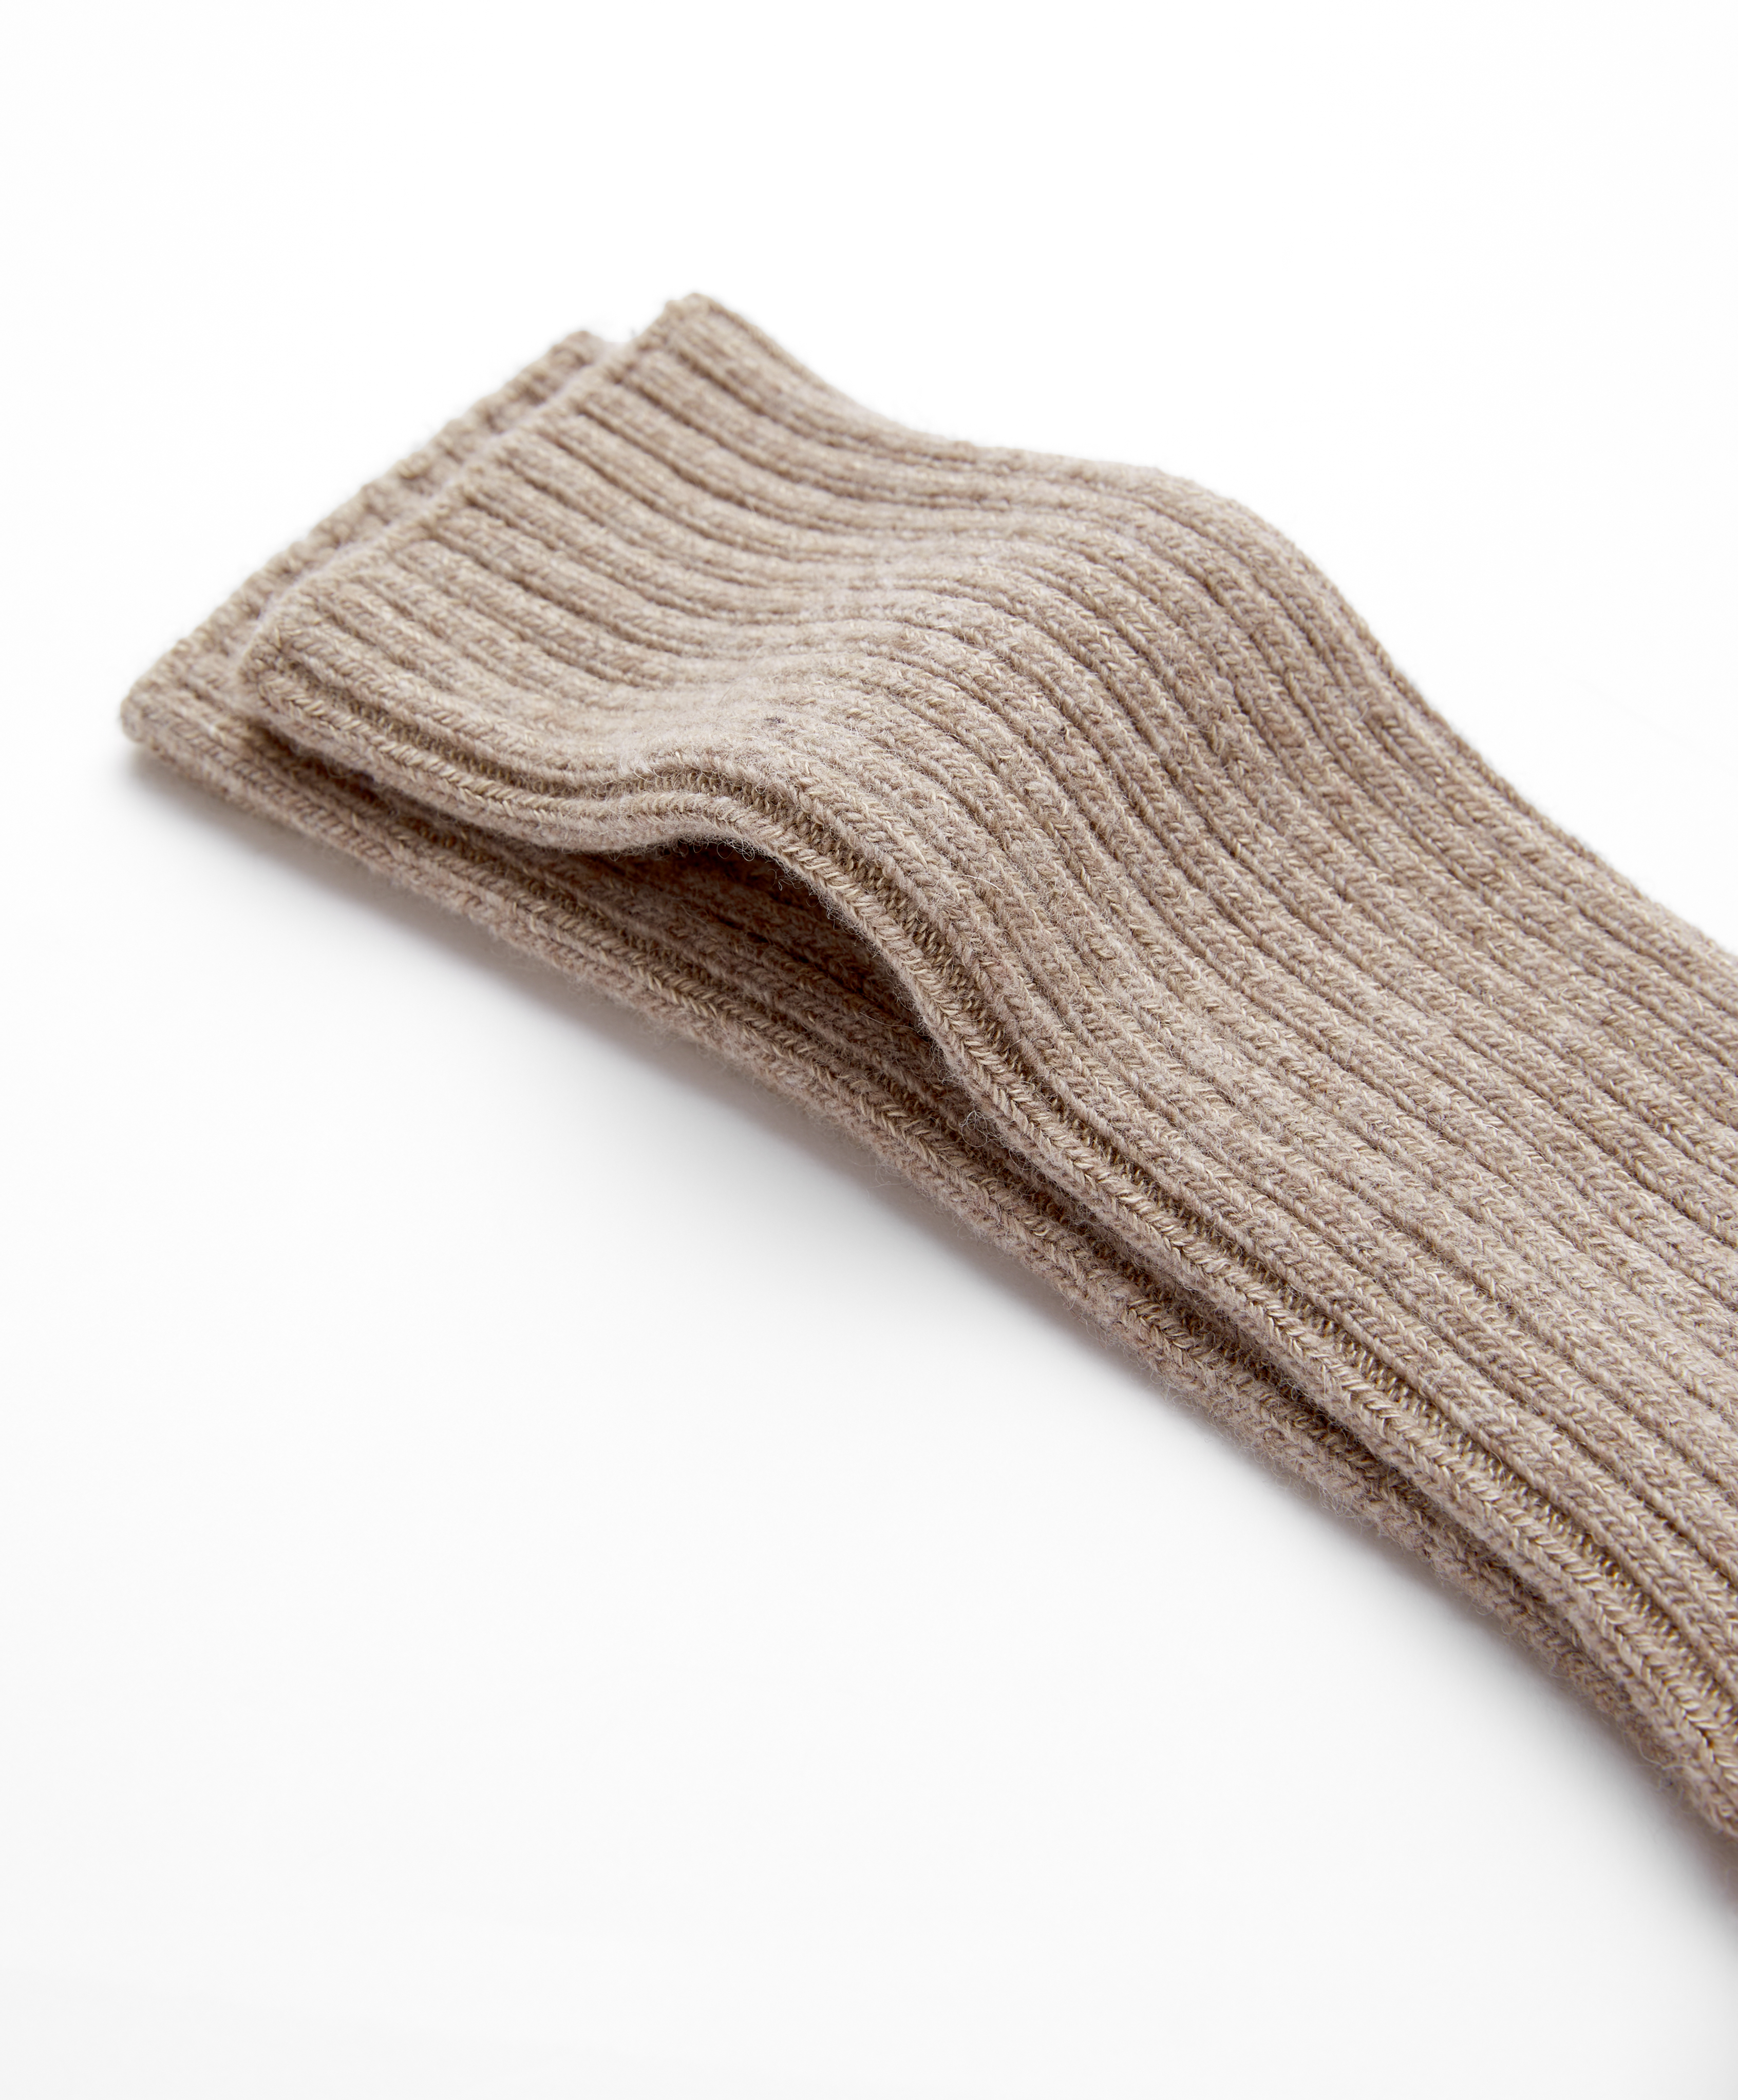 Classic sokken van wol en cashmere met ribstructuur